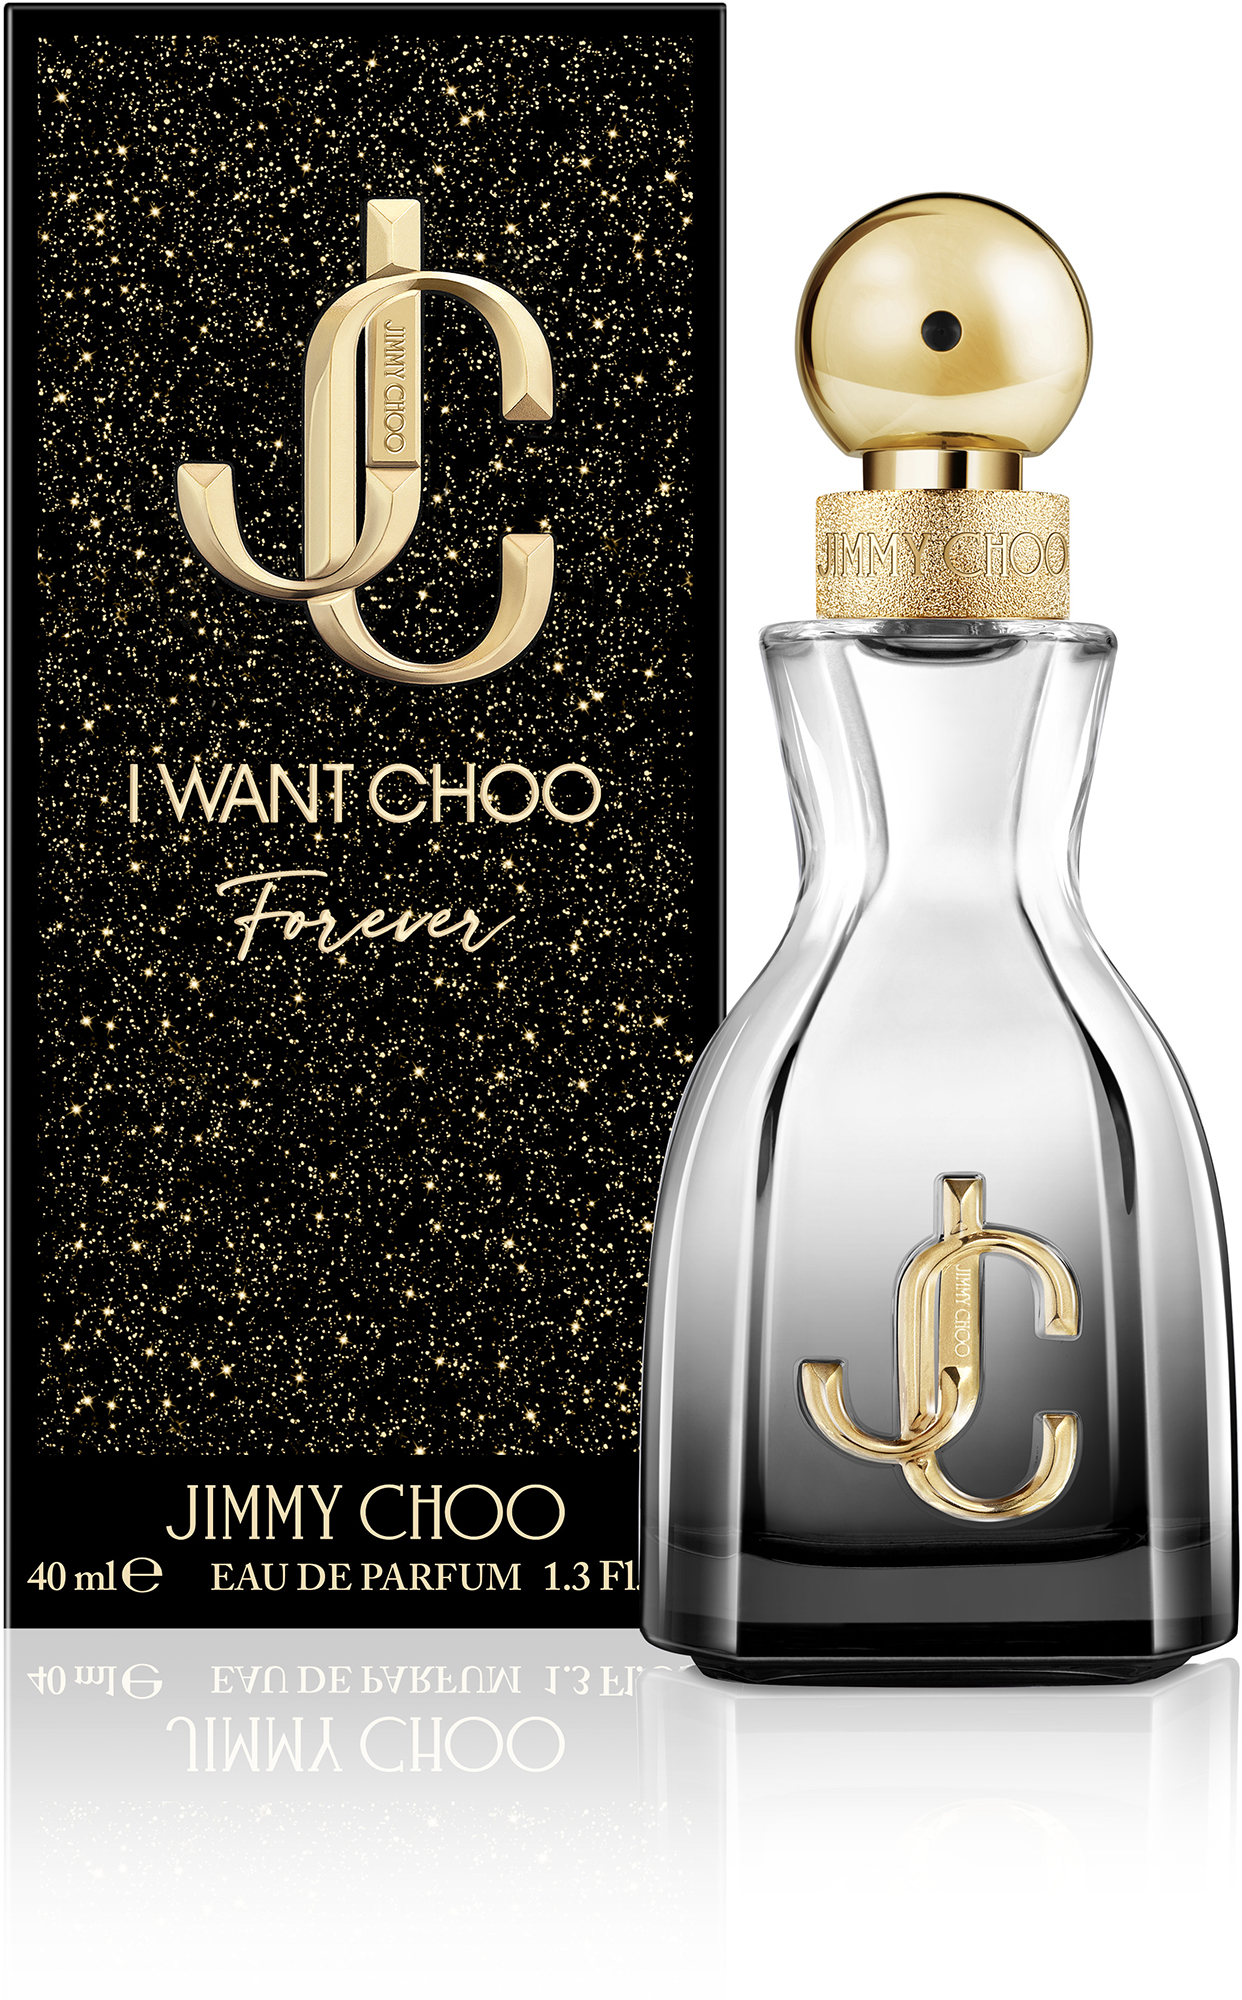 Jimmy Choo I Want Choo Forever, edp 40ml